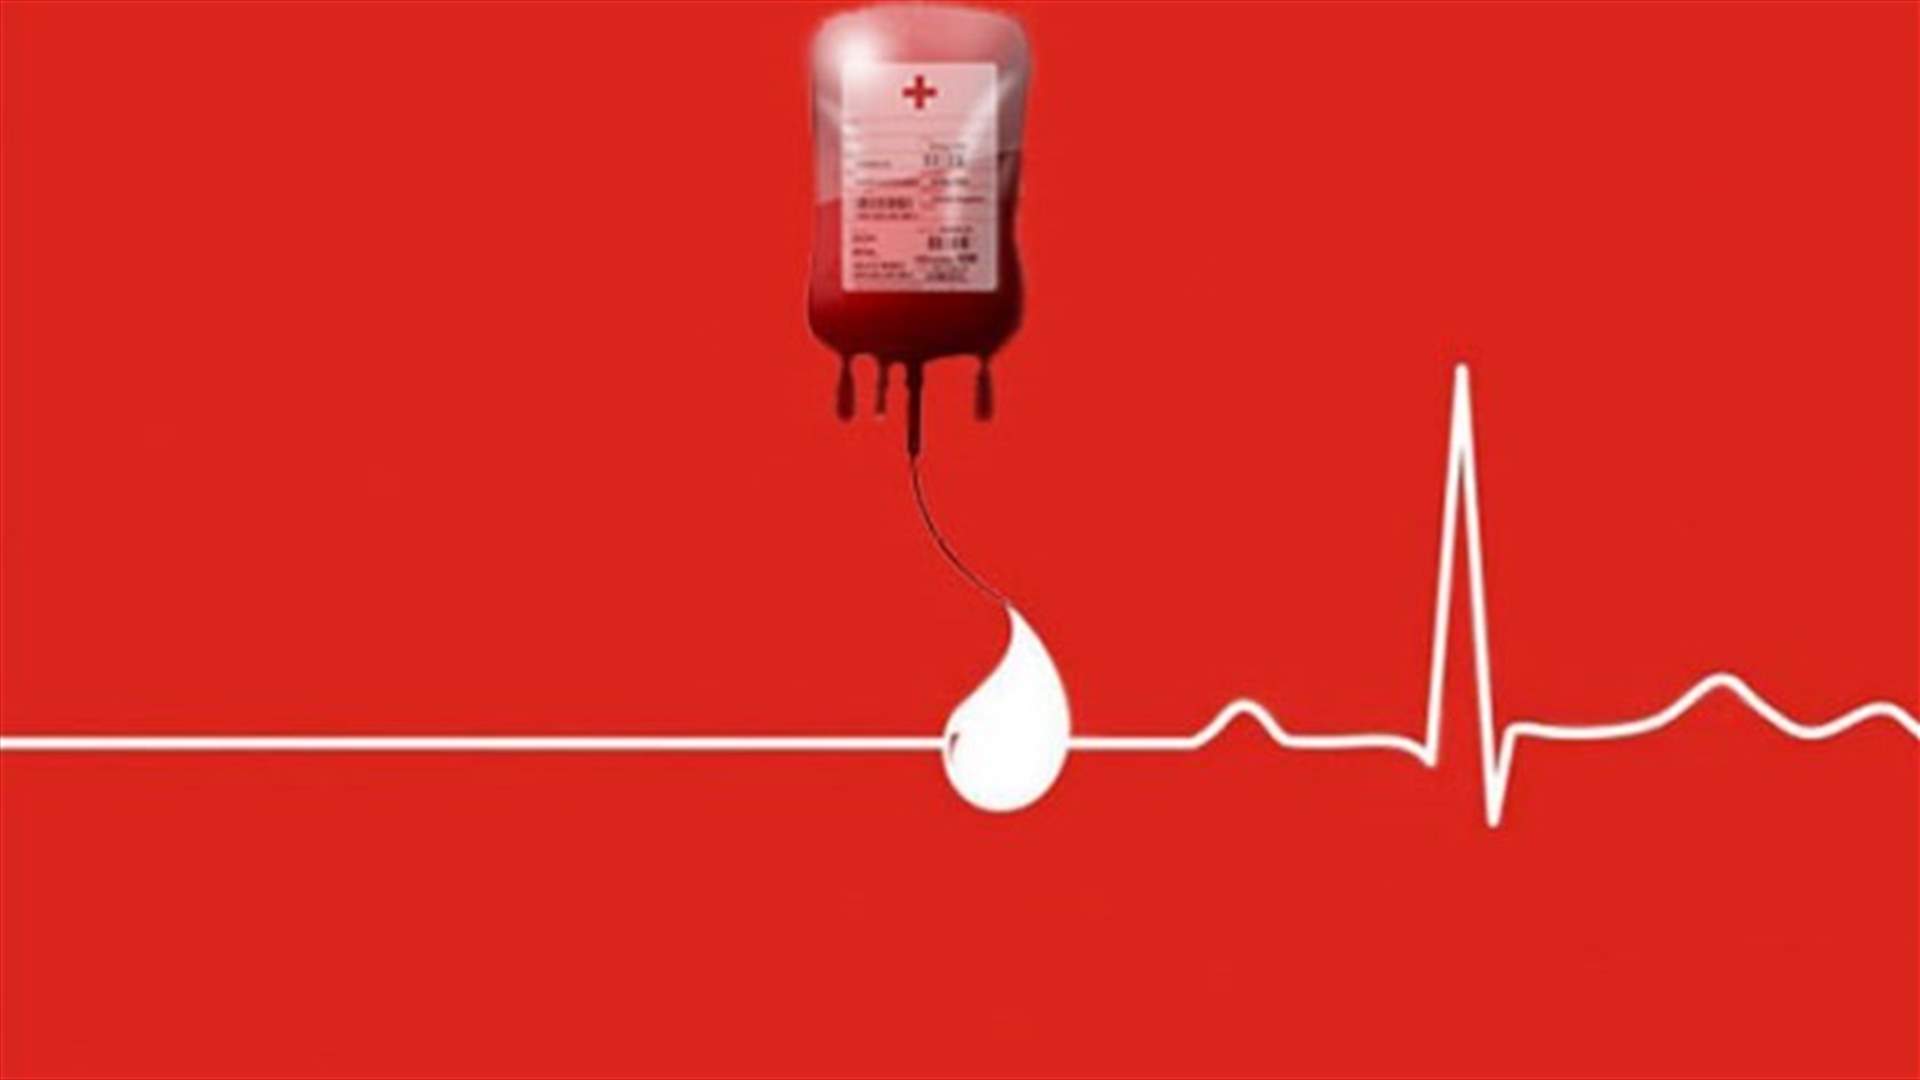 مريض بحاجة الى بلاكيت دم من أي فئة في مستشفى اوتيل ديو. للتبرع:  03557542